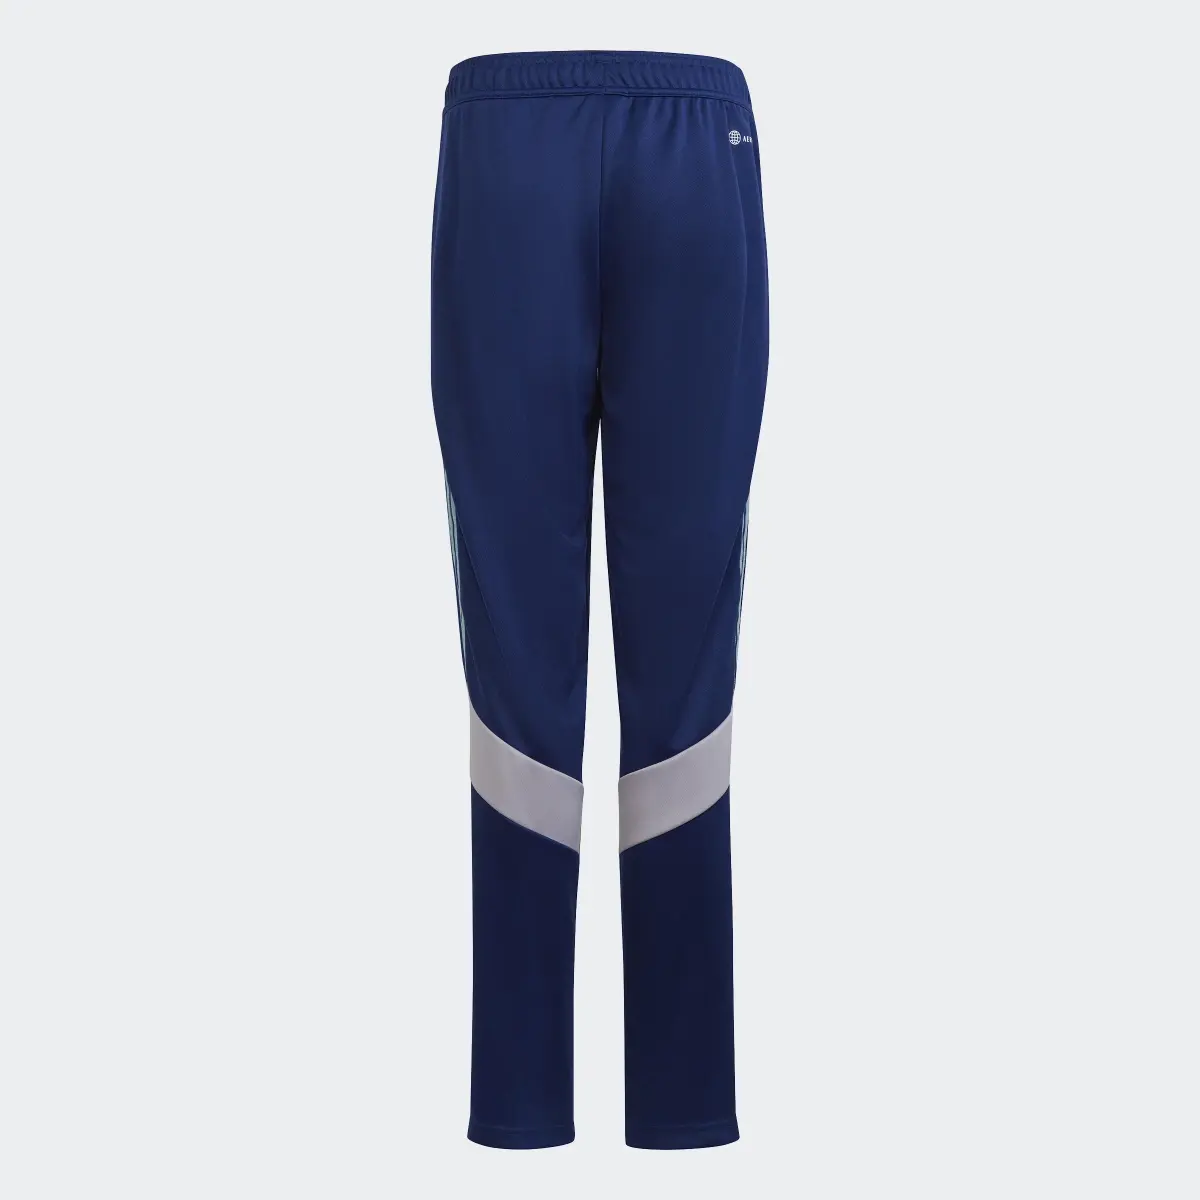 Adidas Pantalon Tiro. 2